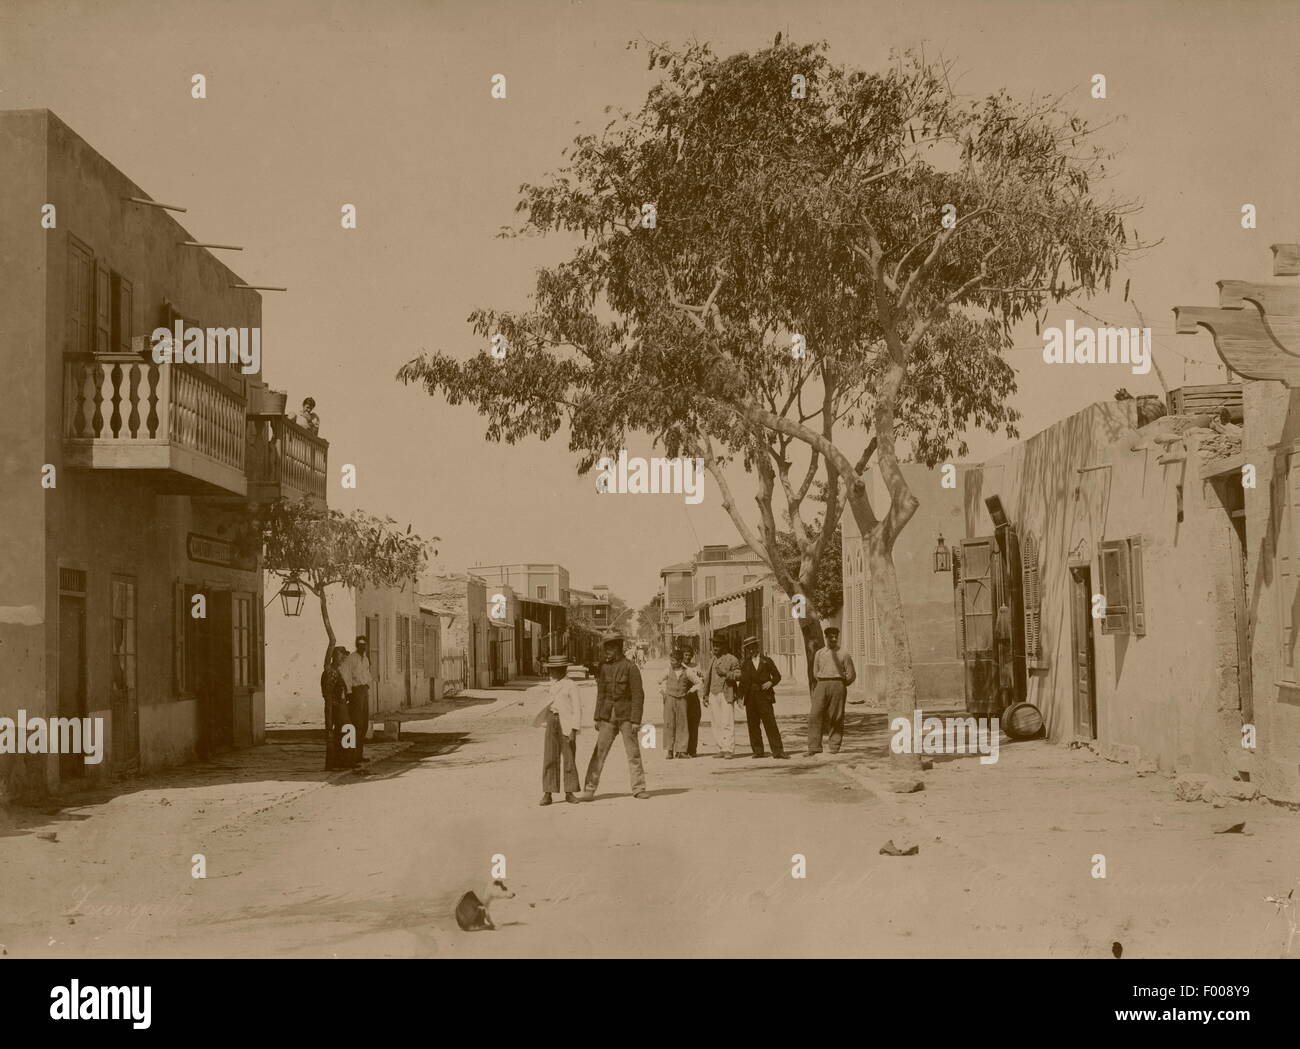 Ismailia, Ägypten - Negrelli Straßenszene in der Multi-Kulti-Suez-Kanal Stadt Ismailia, mit griechischen Jungs spielen in der Straße der 1880er-Jahre.  Ismailia wurde als Basislager für den Bau des Suezkanals im Jahre 1863 gegründet.   Foto von Zangaki. Stockfoto